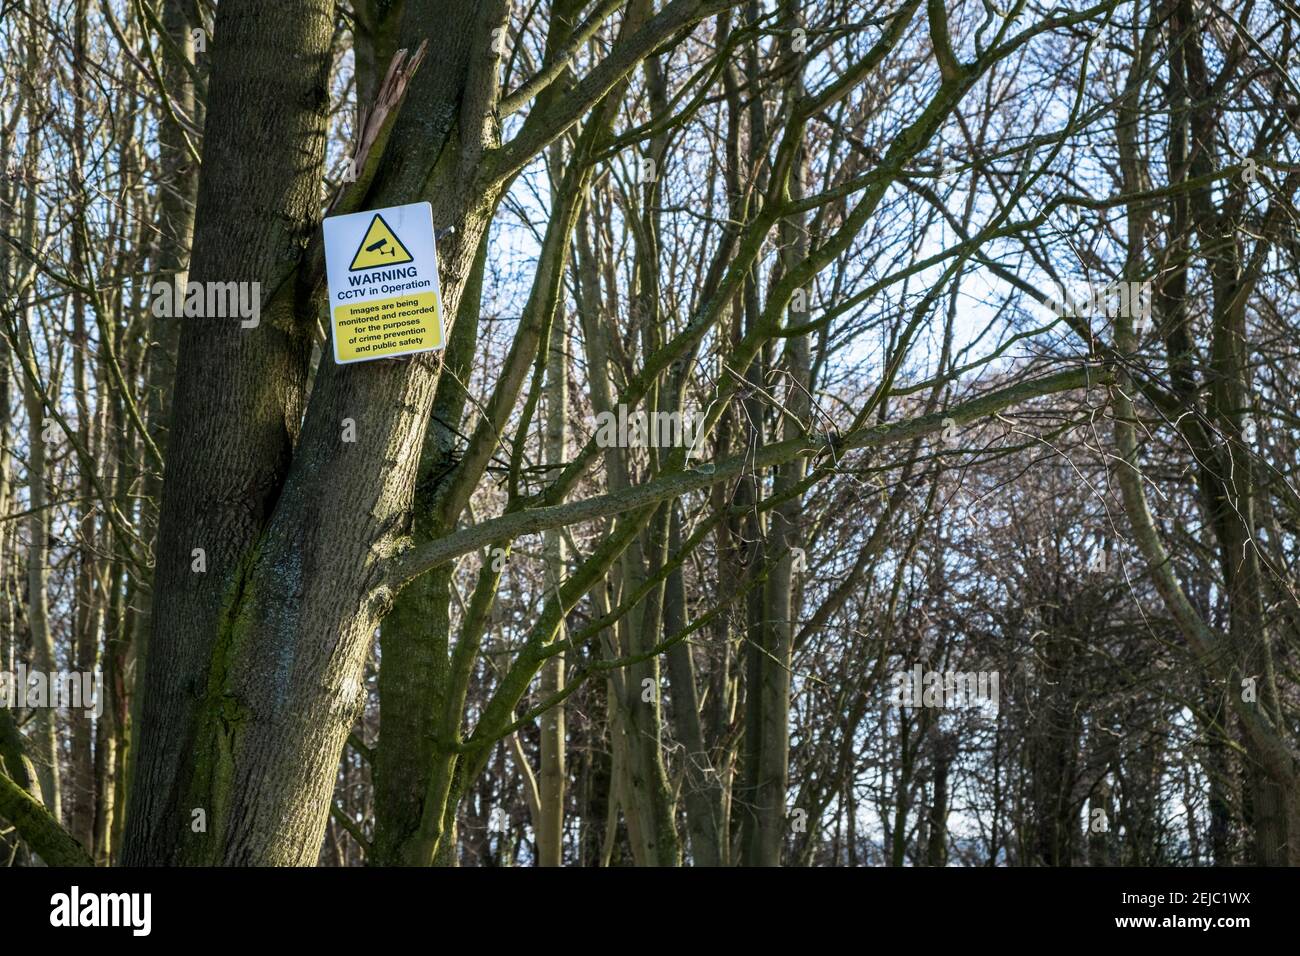 CCTV segno su un albero avvertimento di CCTV in funzione in un bosco, Nottinghamshire, Inghilterra, Regno Unito Foto Stock